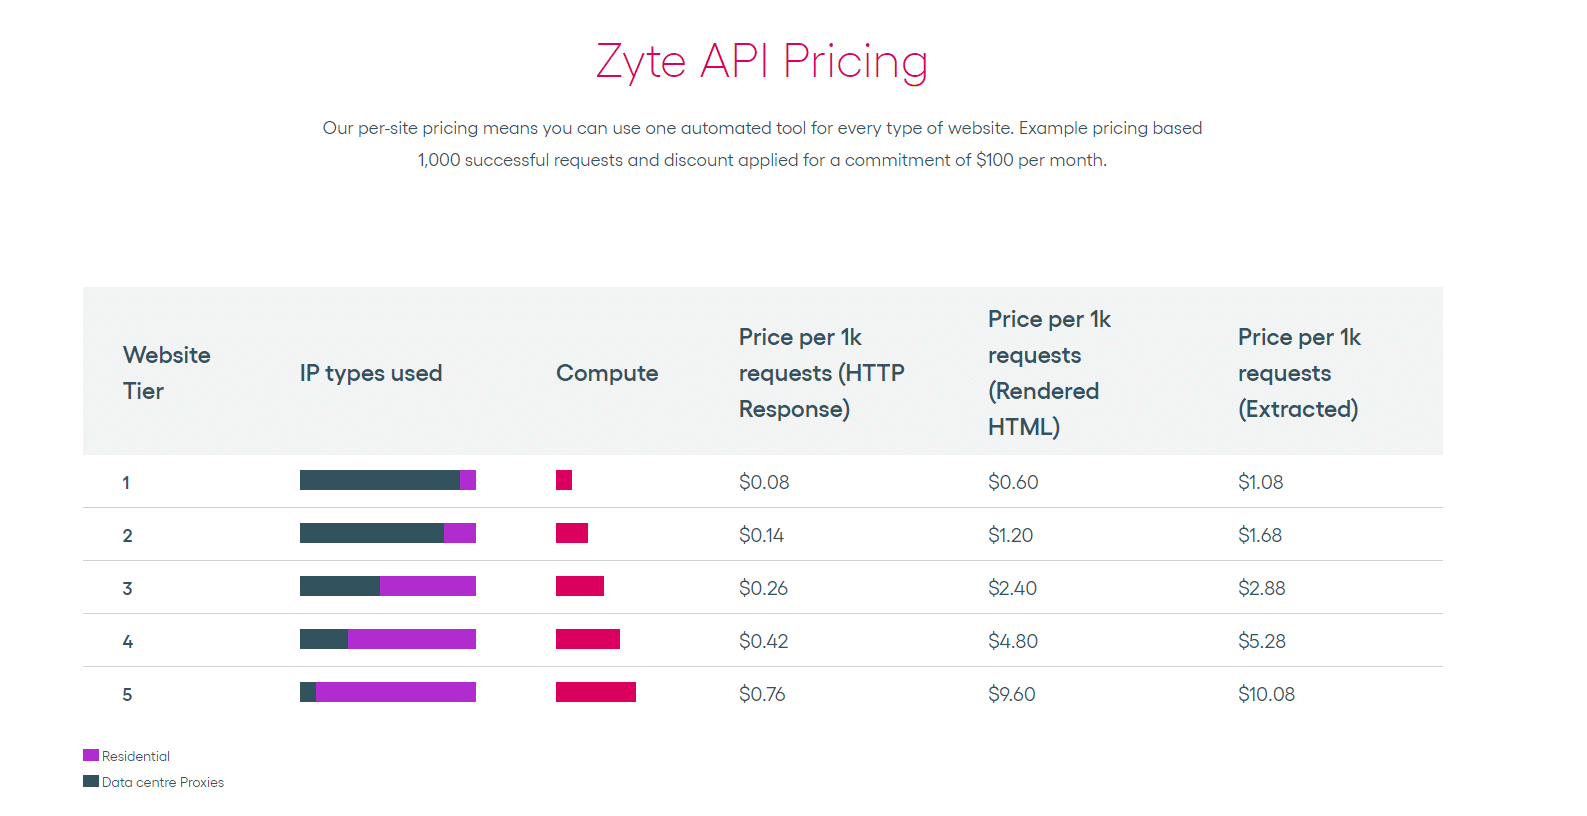 Prezzi dell'API Zyte